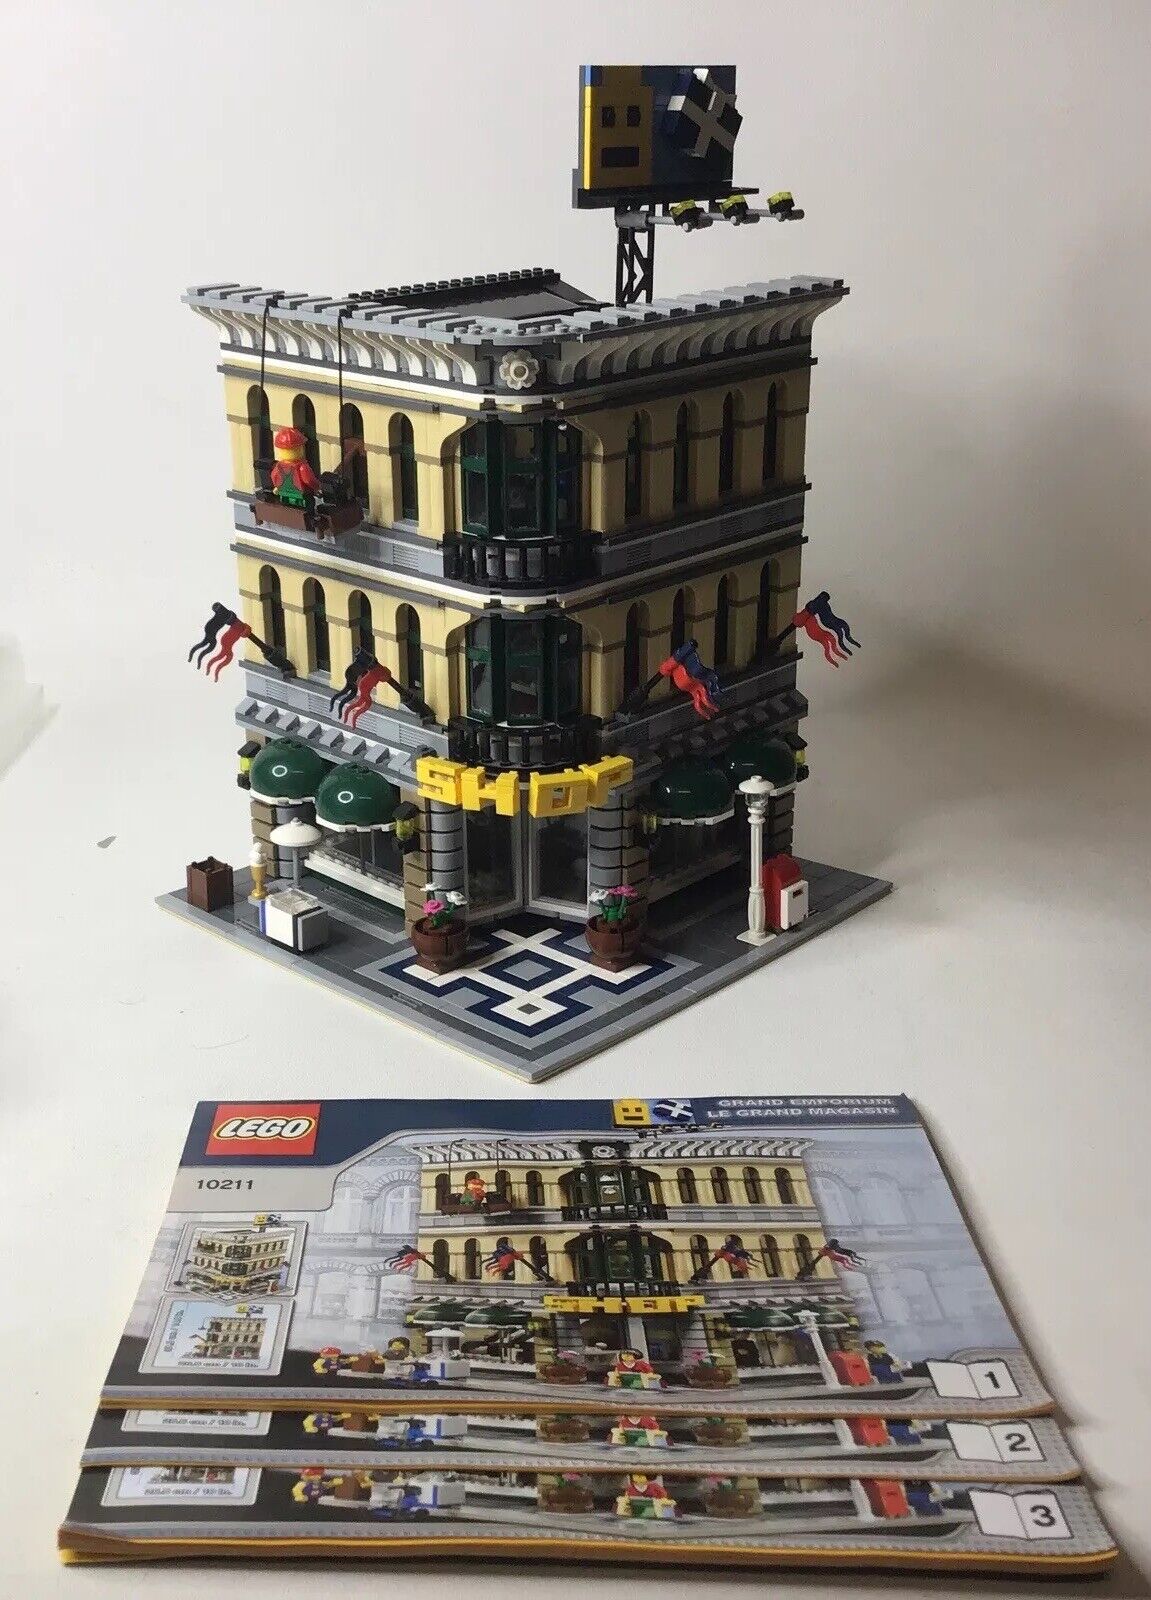 10211 LEGO CREATOR MODULAR" GRAND EMPORIUM" 100% Complete